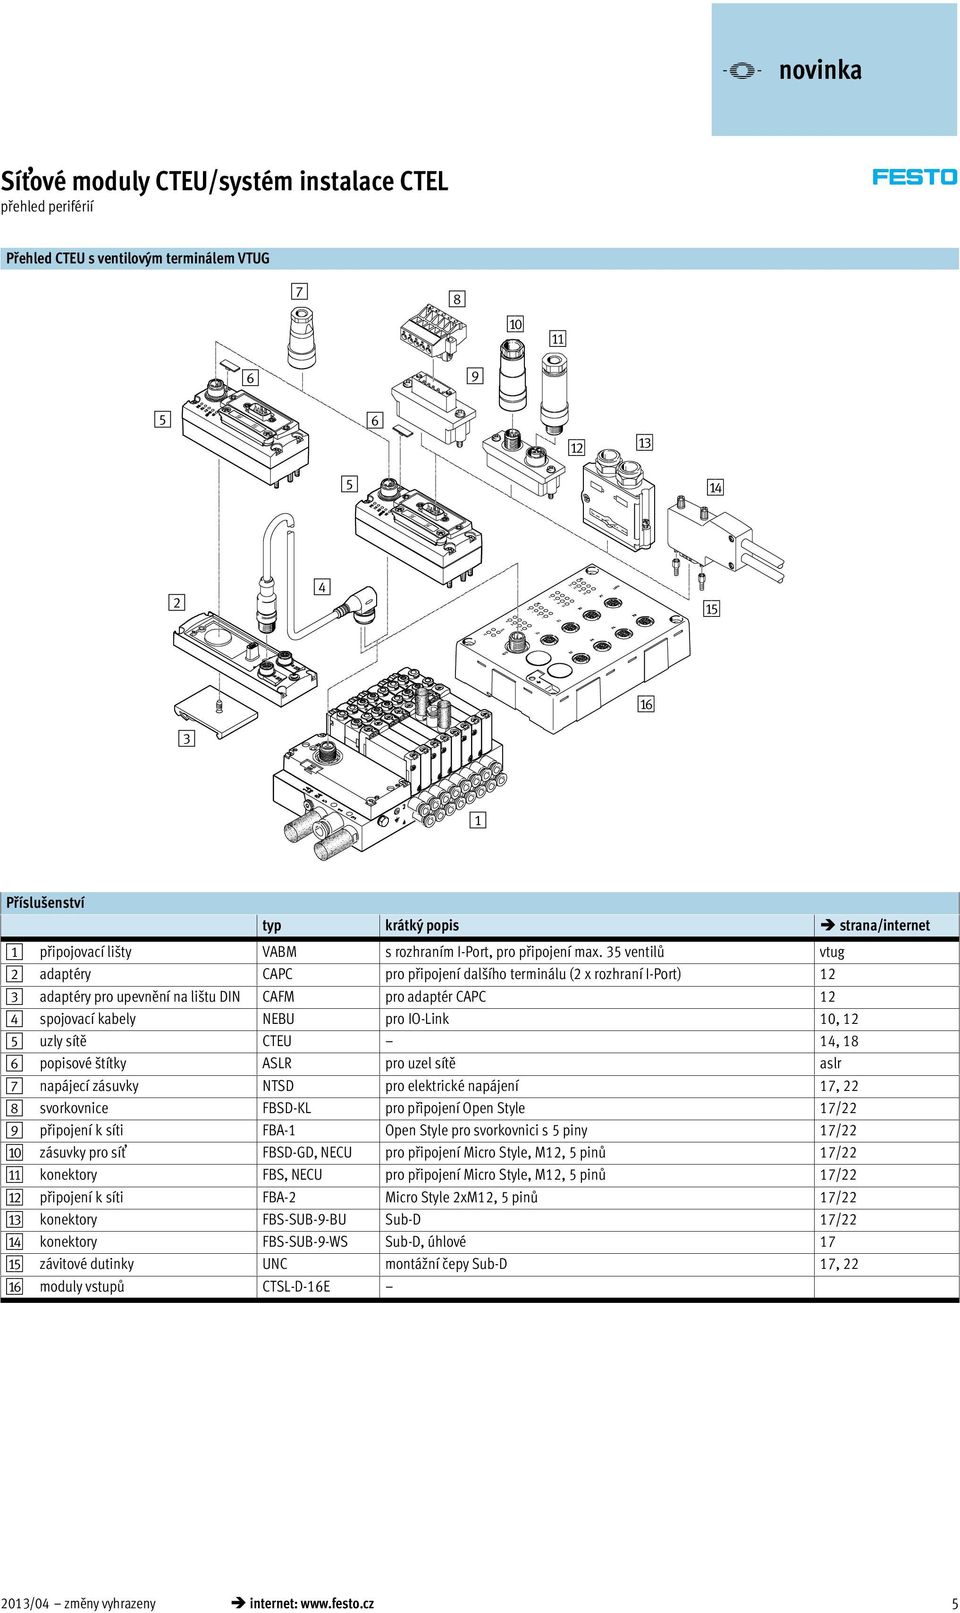 35 ventilů vtug 2 adaptéry CAPC pro připojení dalšího terminálu (2 x rozhraní I-Port) 12 3 adaptéry pro upevnění na lištu DIN CAFM pro adaptér CAPC 12 4 spojovací kabely NEBU pro IO-Link 10, 12 5